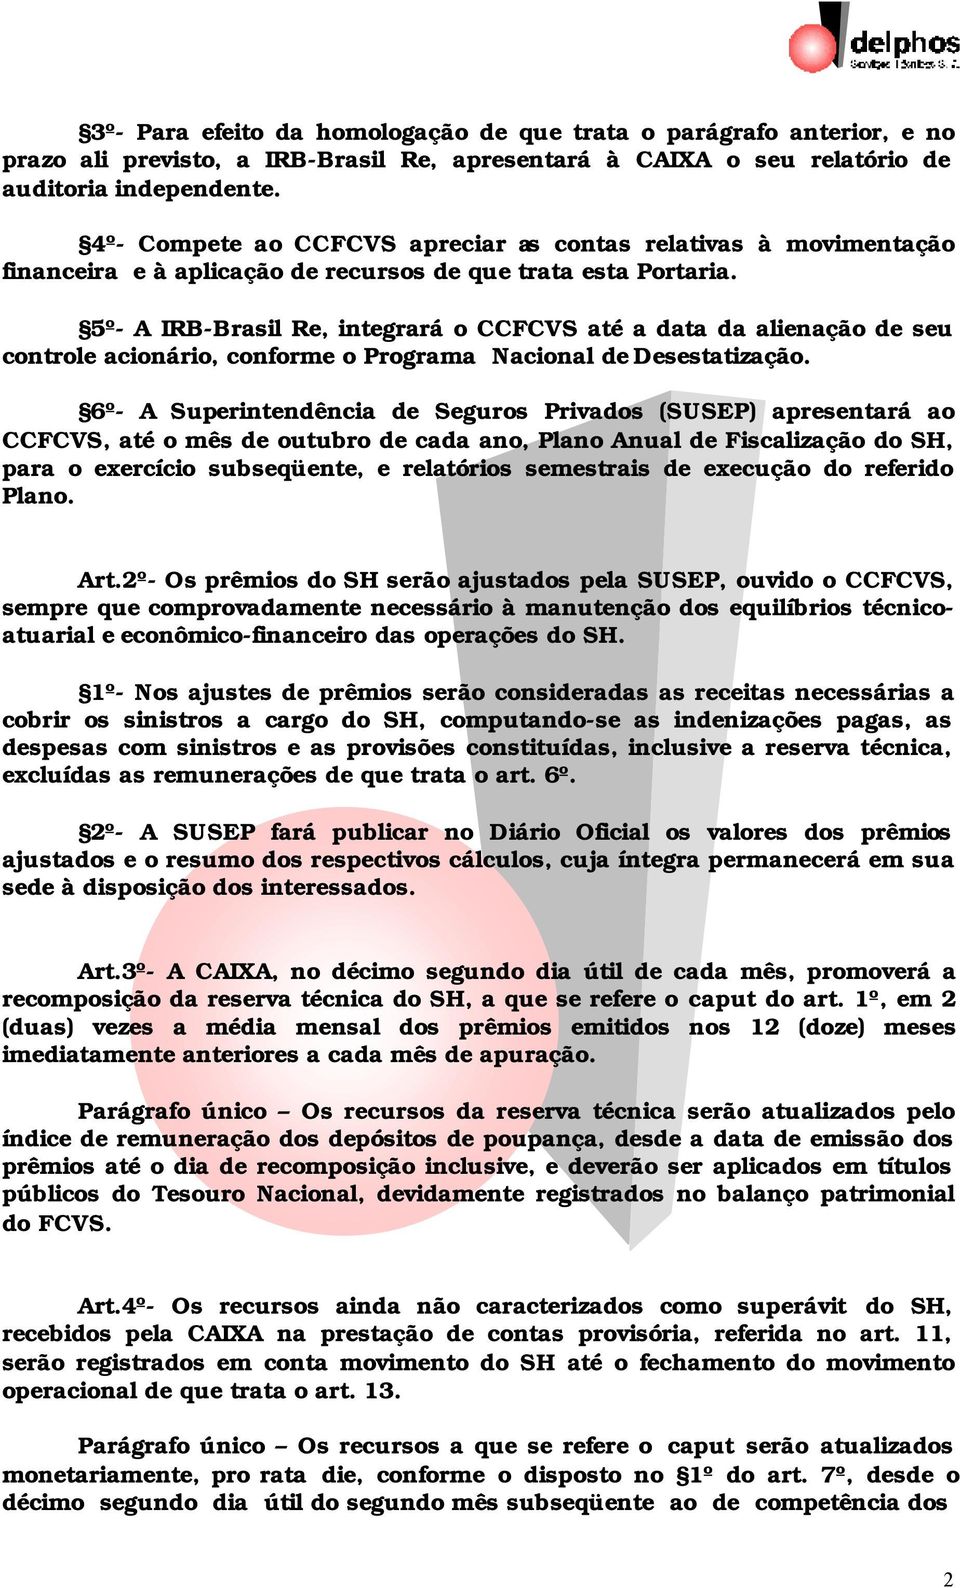 5º- A IRB-Brasil Re, integrará o CCFCVS até a data da alienação de seu controle acionário, conforme o Programa Nacional de Desestatização.